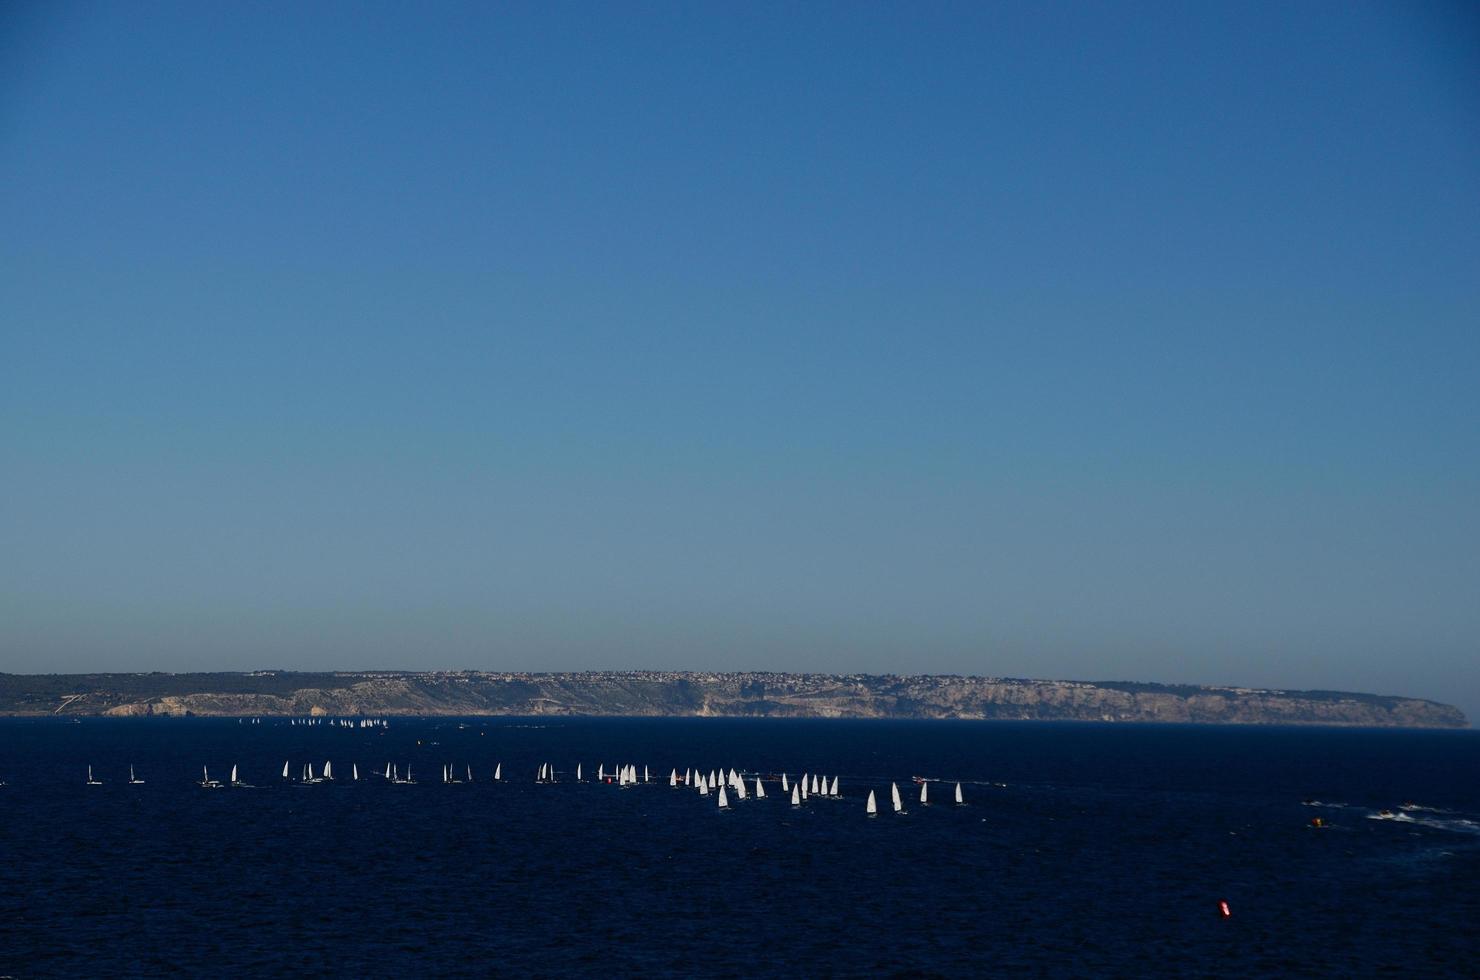 many sailboats and blue sea photo